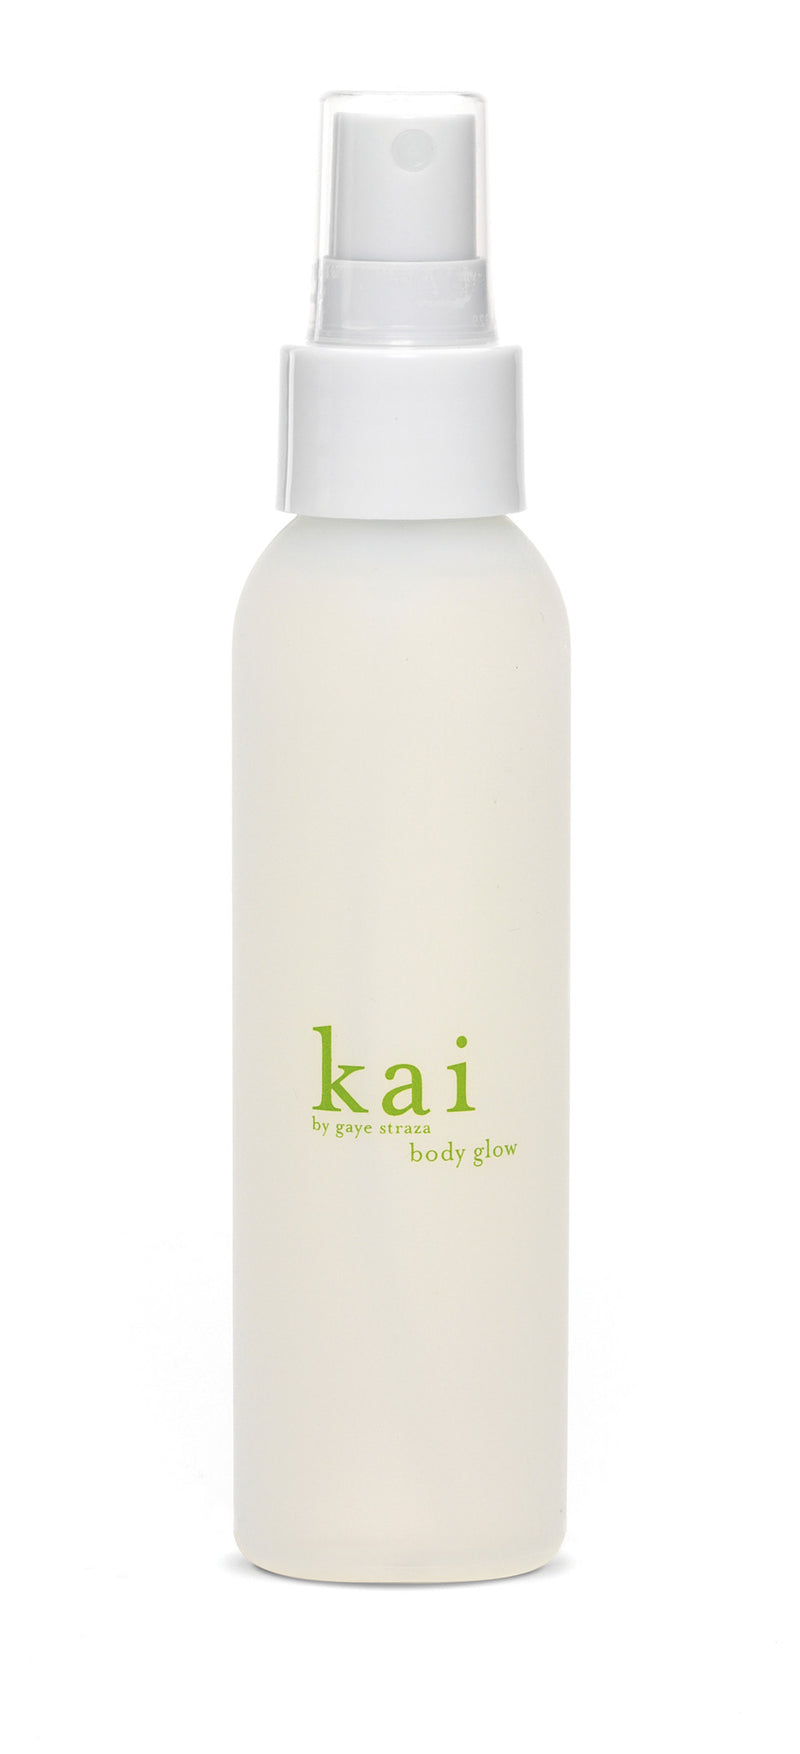 media image for kai body glow design by kai fragrance 1 231